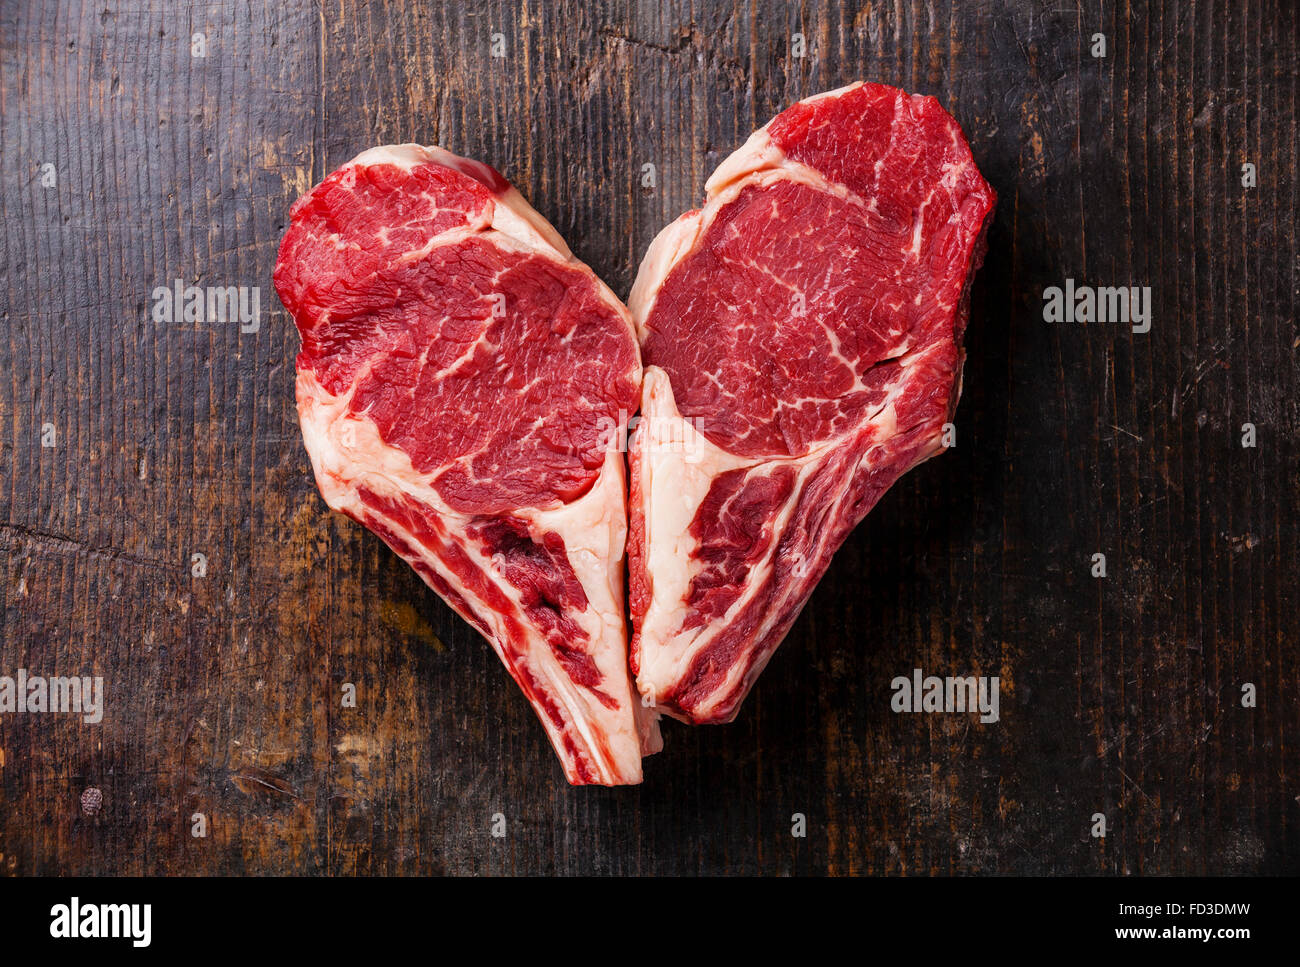 Forme de coeur la viande crue Ribeye Steak entrecote sur l'os sur fond de bois Banque D'Images